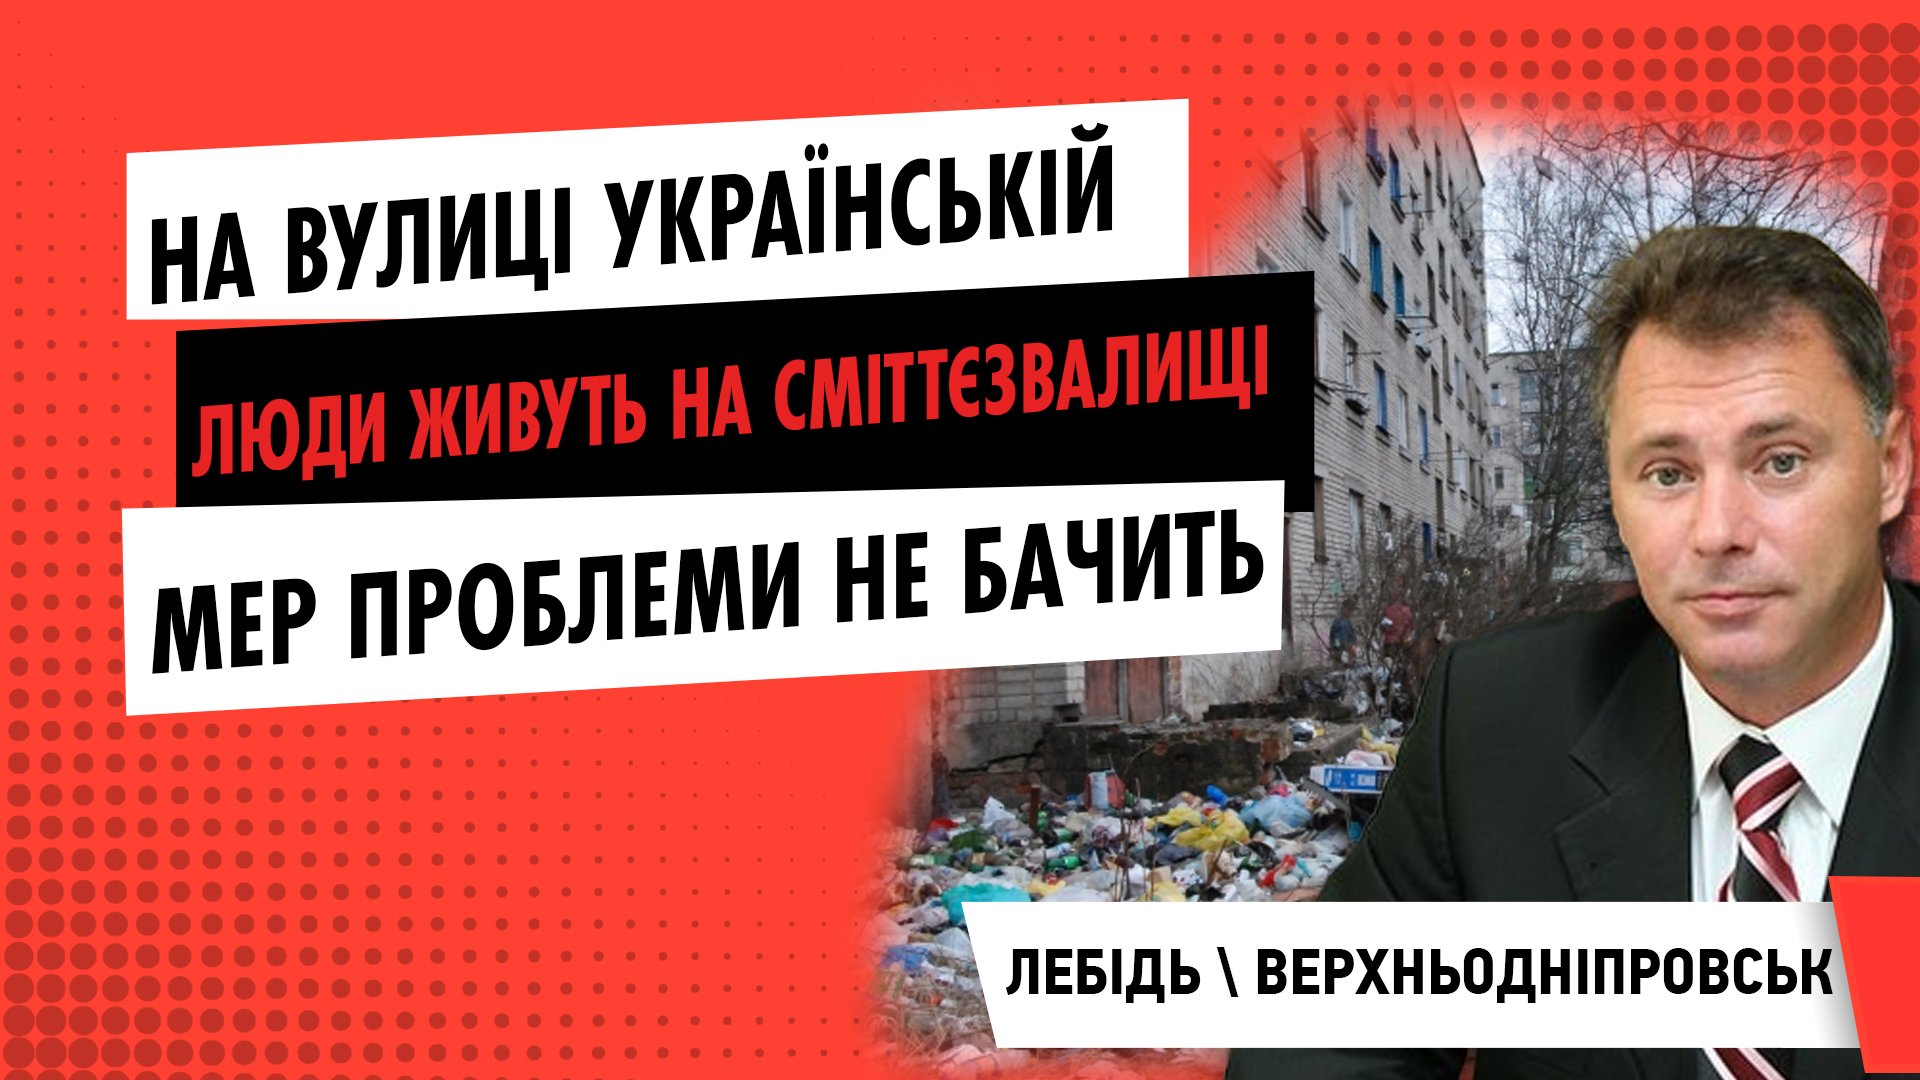 У Верхньодніпровську люди живуть практично на сміттєзвалищі. Мер Лебідь проблеми не бачить